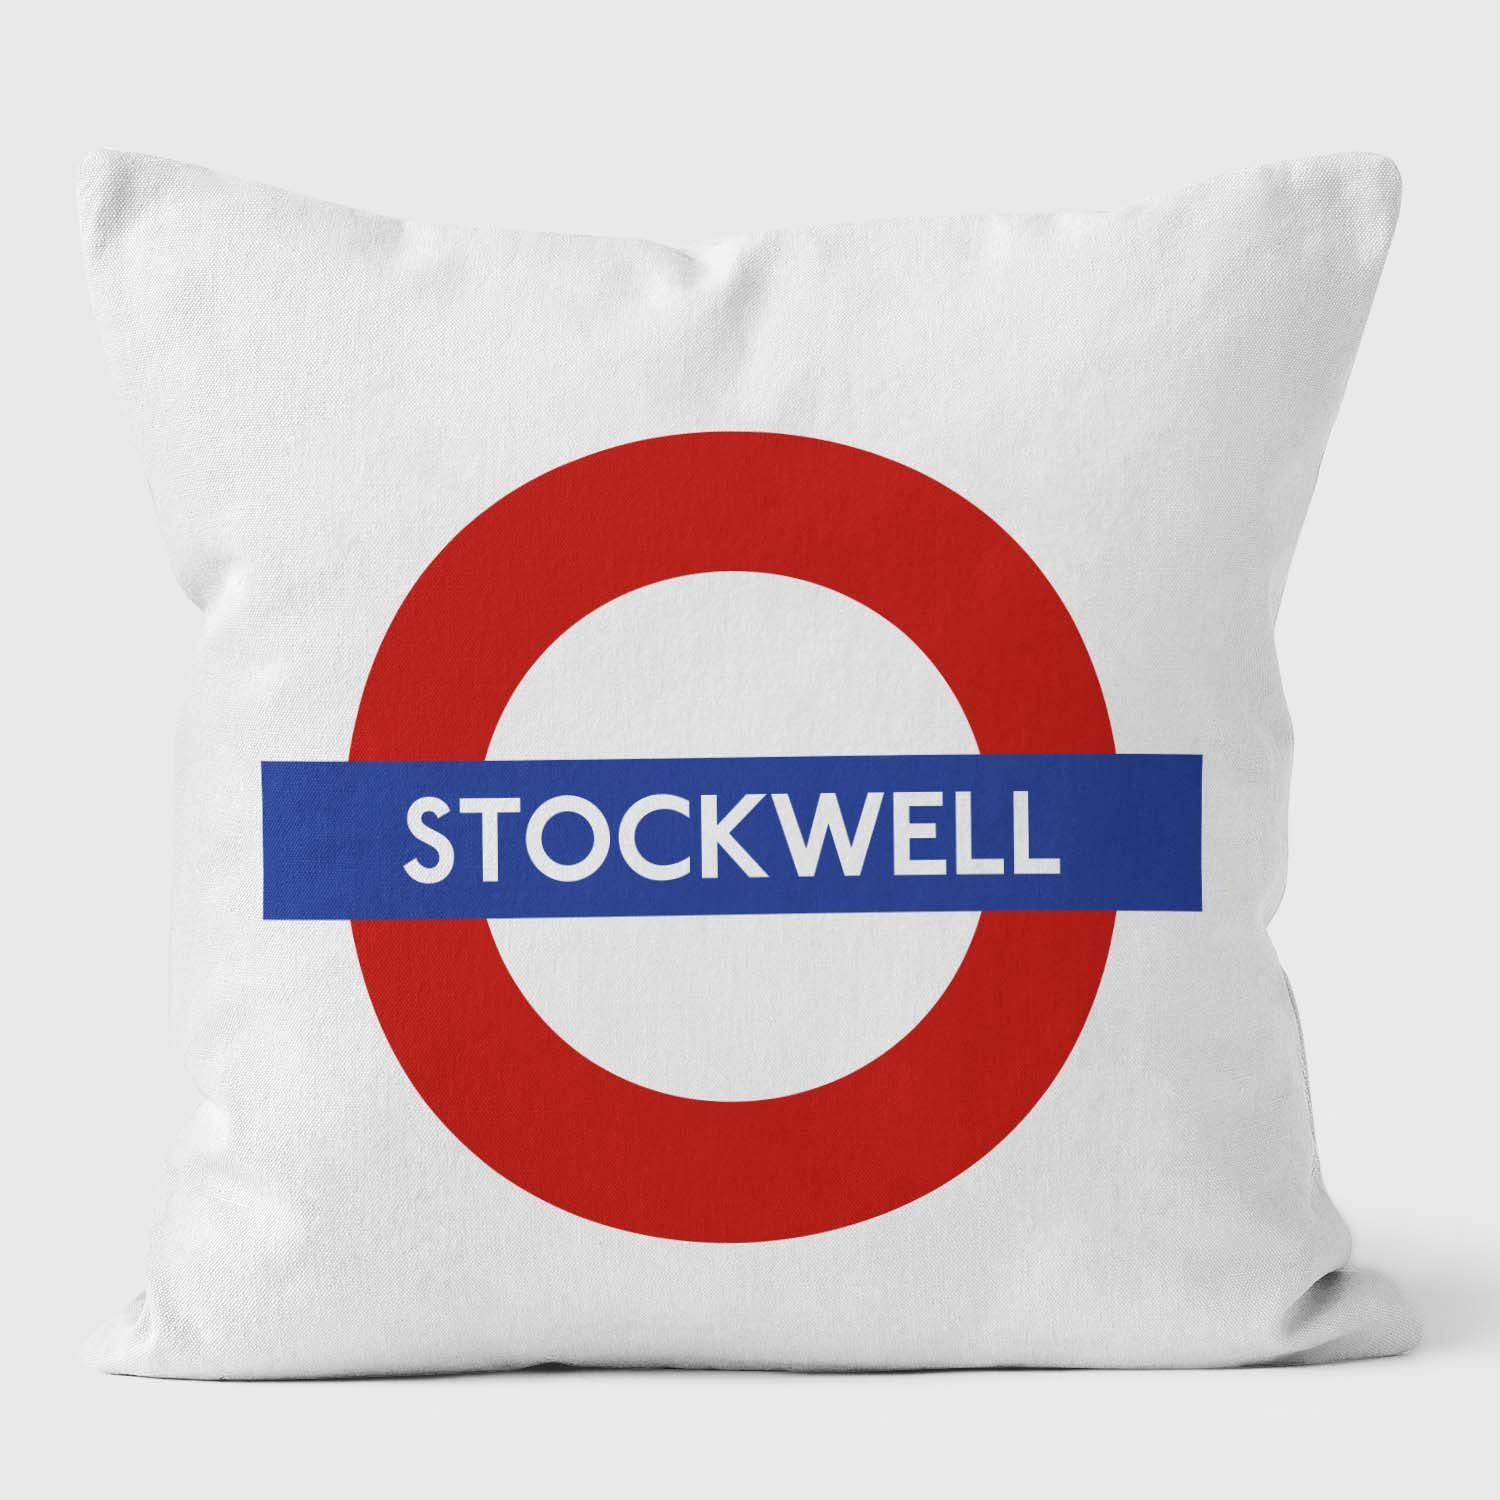 Strockwell London Underground Tube Station Roundel Cushion - Handmade Cushions UK - WeLoveCushions